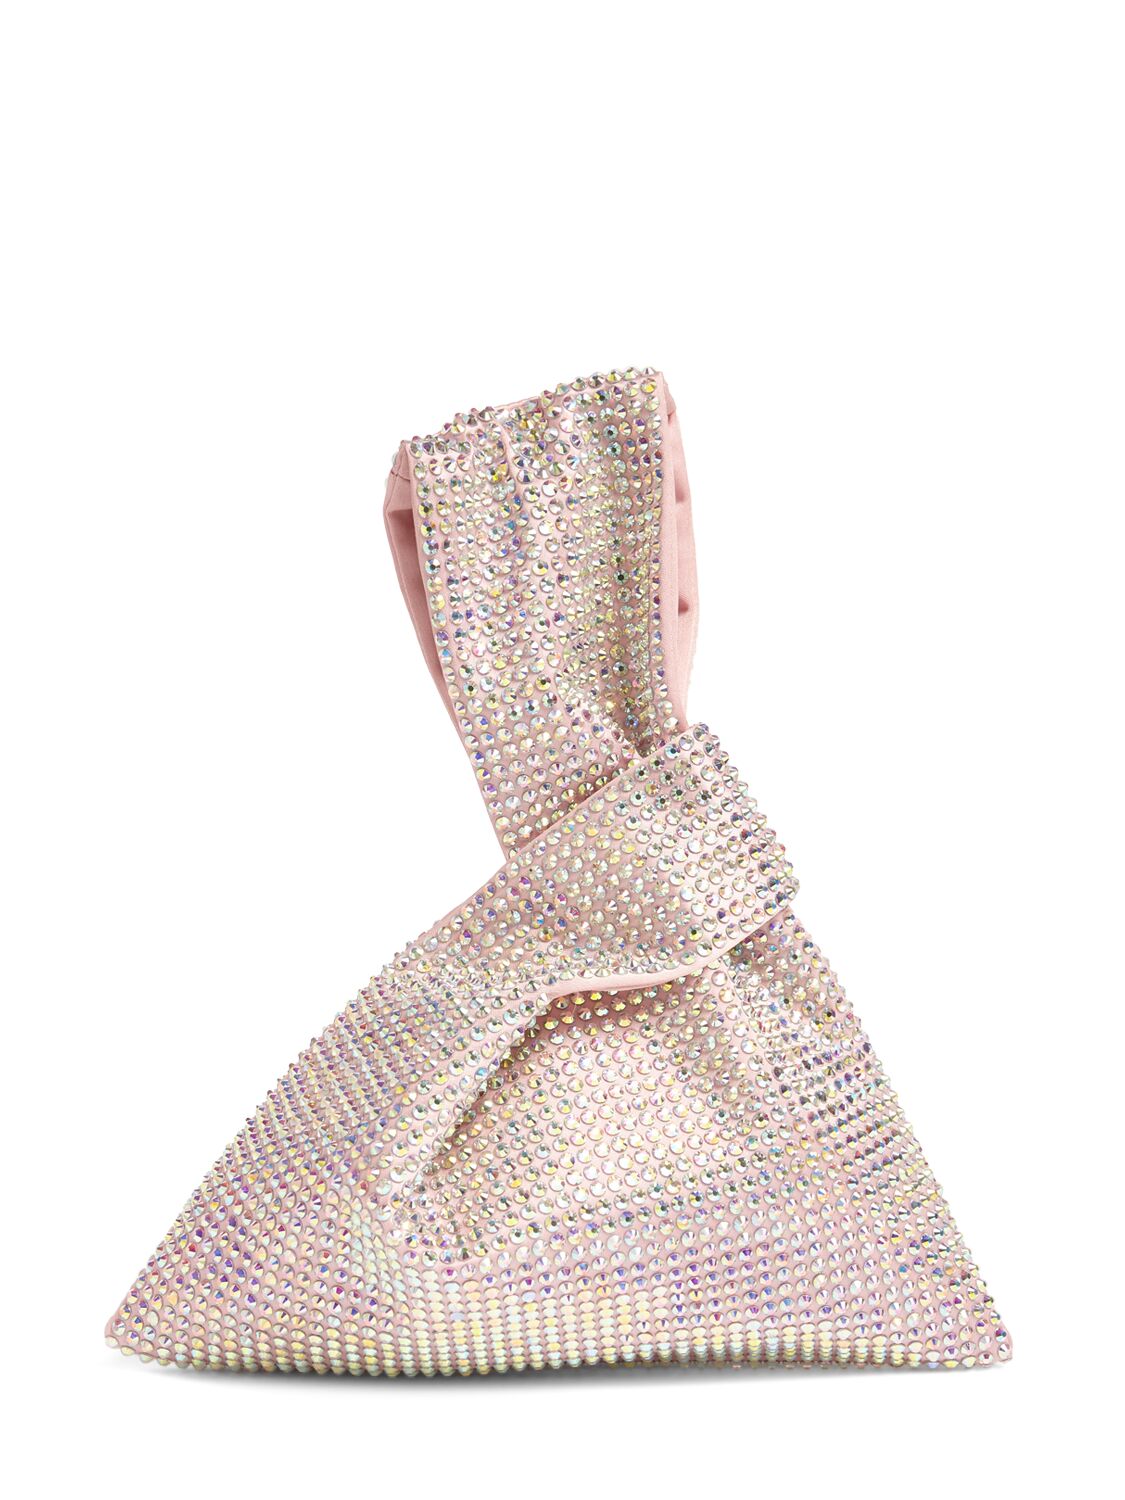 Giuseppe Di Morabito Crystal Top Handle Bag In Light Pink